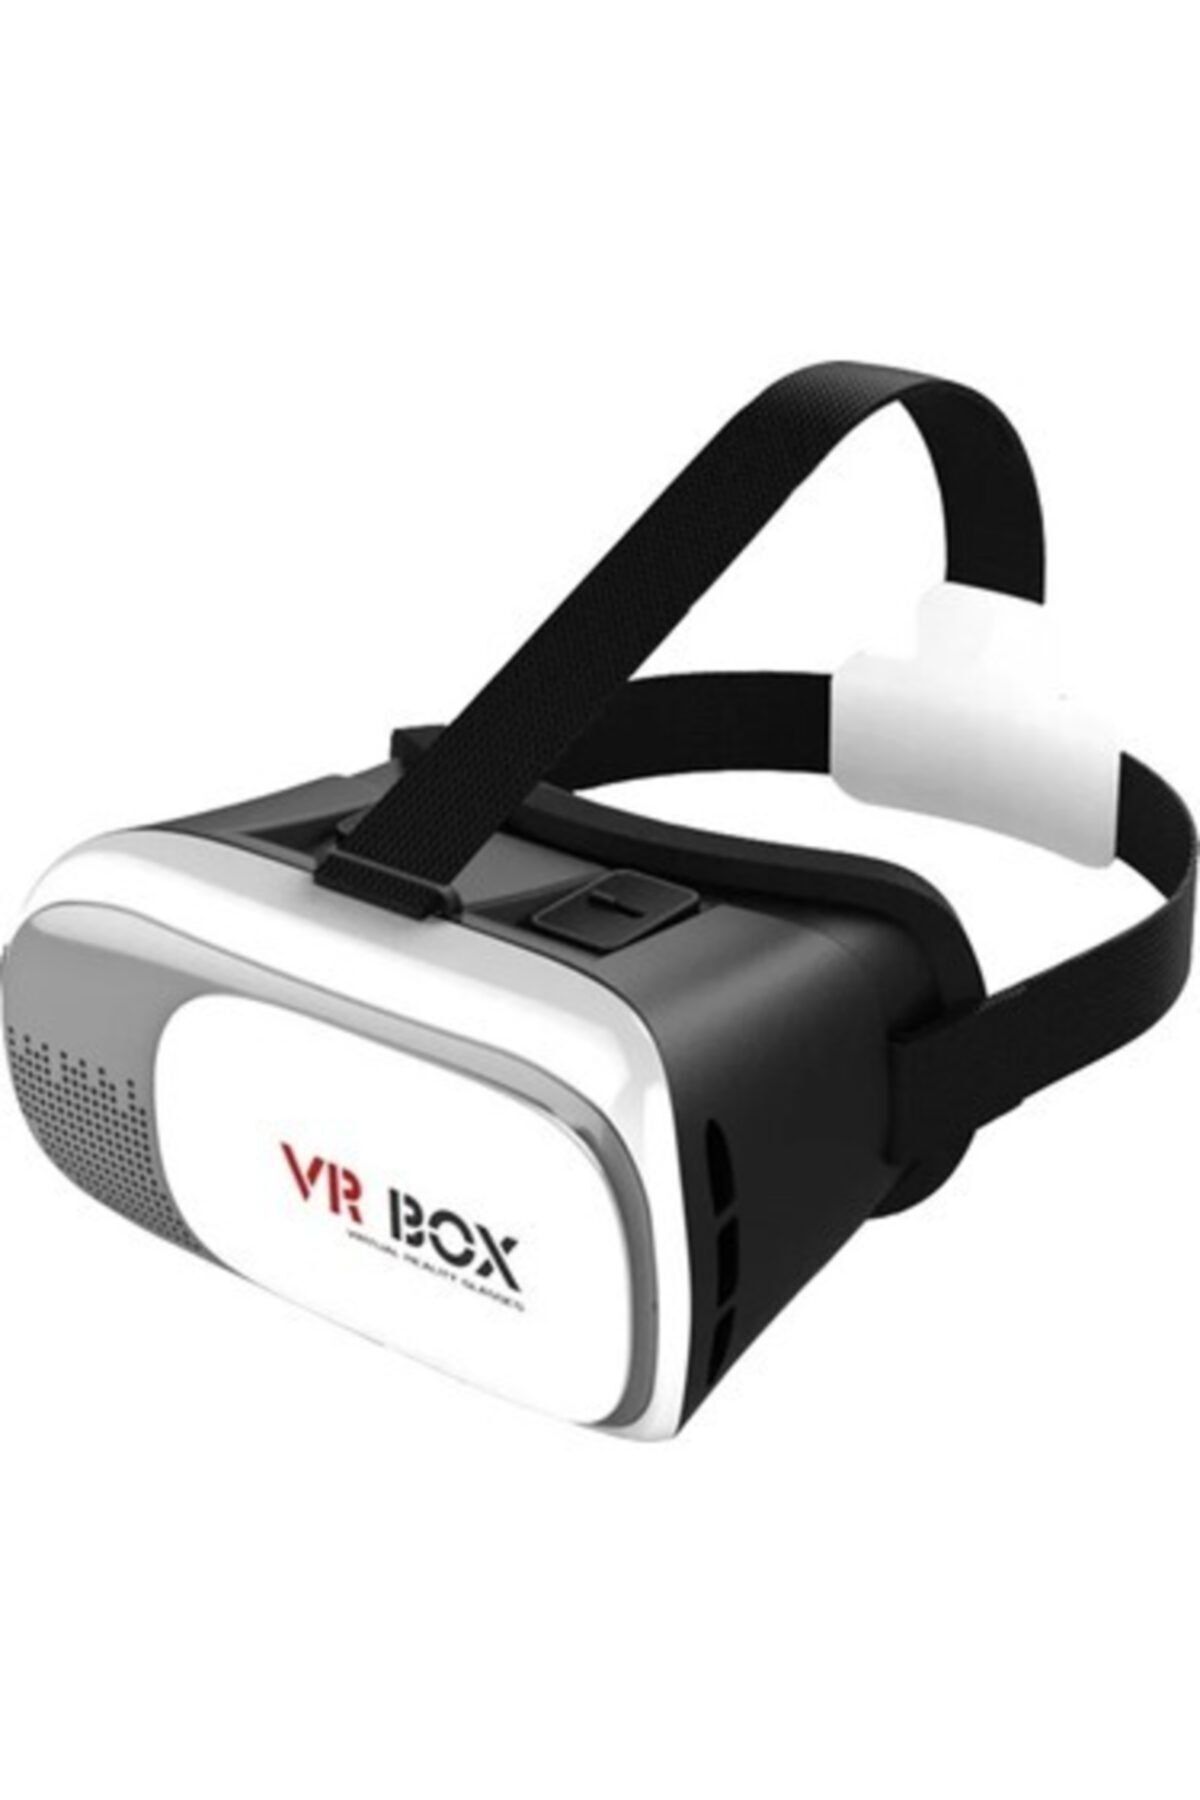 Vr Box 360 Derece Sanal Gerçeklik Gözlüğü